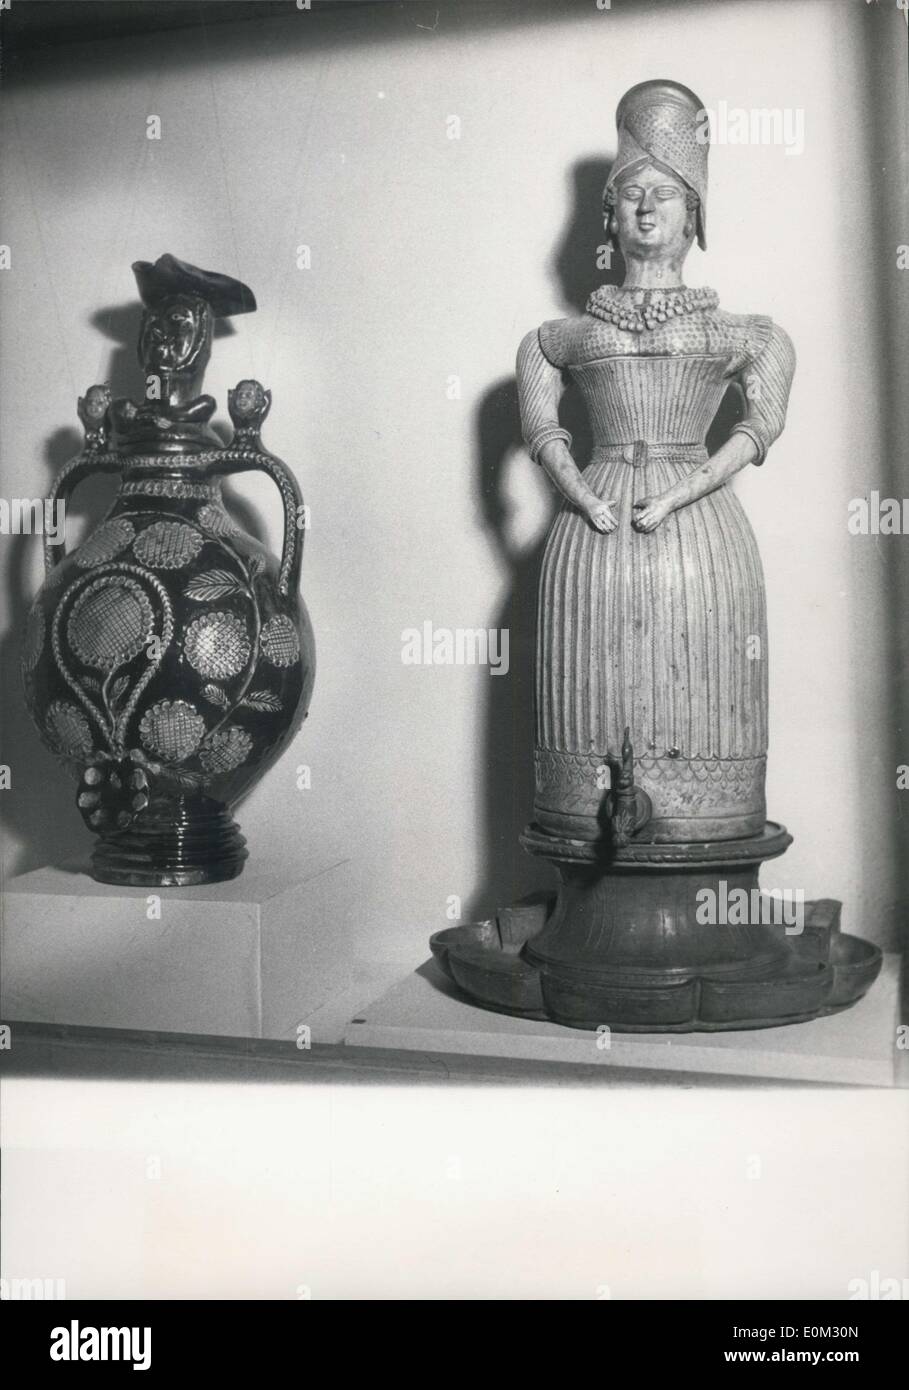 Avril 18, 1953 - à gauche : La poterie fabriquée dans le Calvados arrondissement au cours du 18e siècle. Droite : poterie de la Cher District au cours du xixe siècle. Banque D'Images